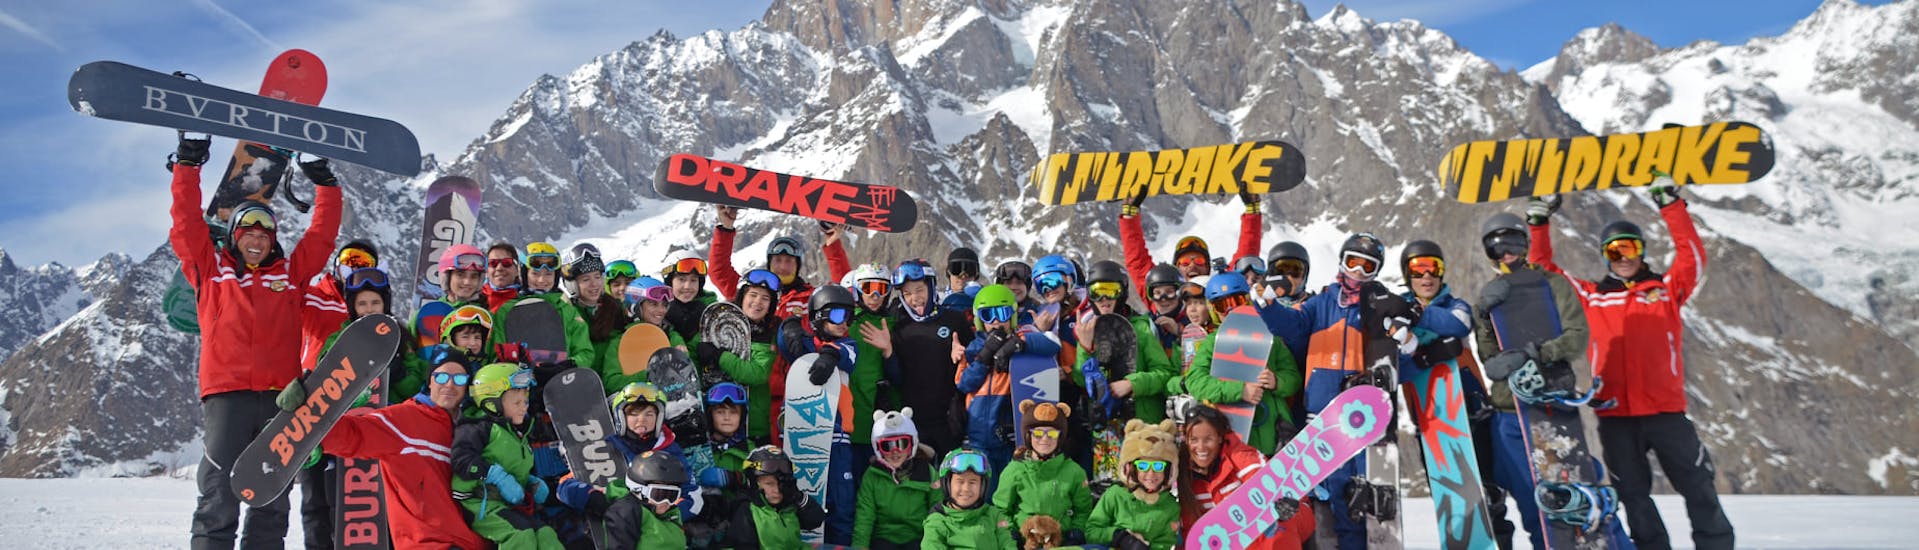 Foto di un gruppo di persone che posano davanti alla macchina fotografica con i loro maestri della Scuola di Sci Monte Bianco Courmayeur durante le Lezioni di snowboard (dai 5 anni) per tutti i livelli.